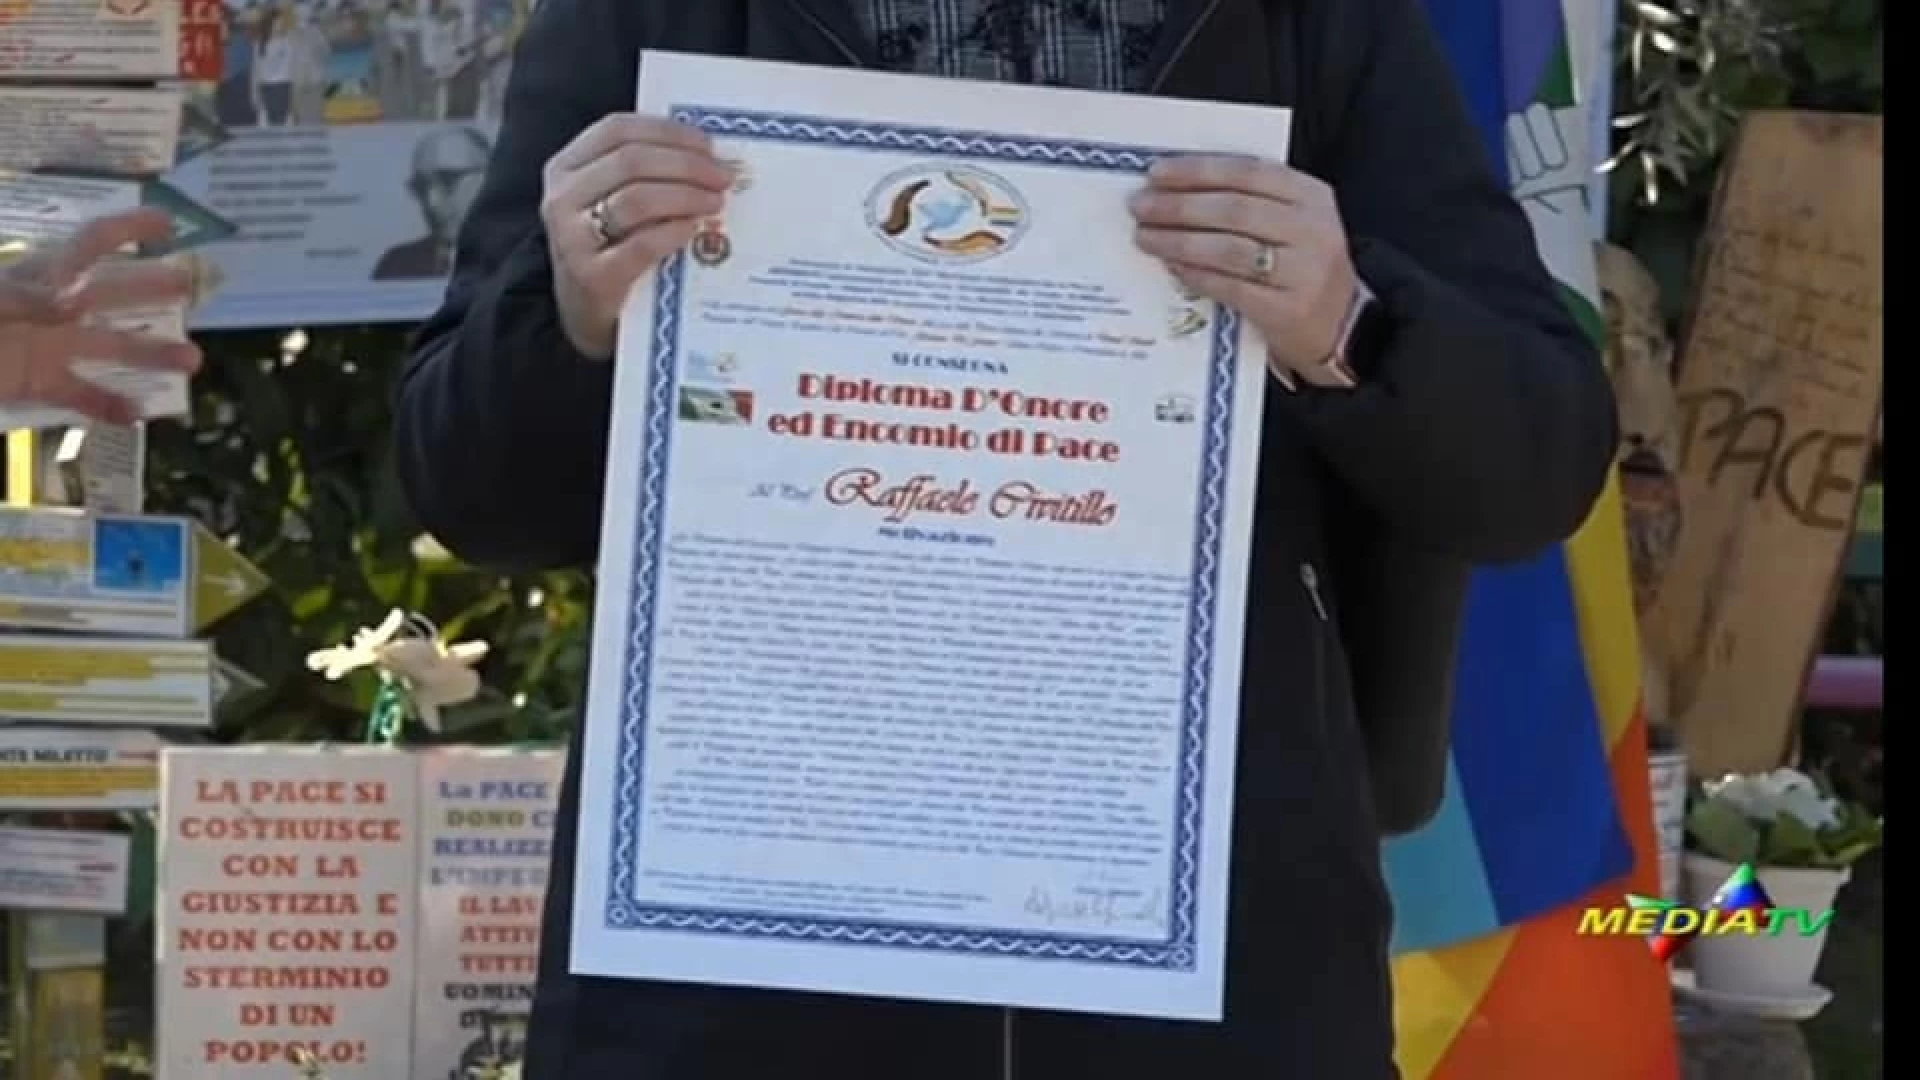 Alife: nel Giorno della Memoria conferito a Raffaele Civitillo il “Diploma d’onore ed encomio di pace” da Agnese Ginocchio.